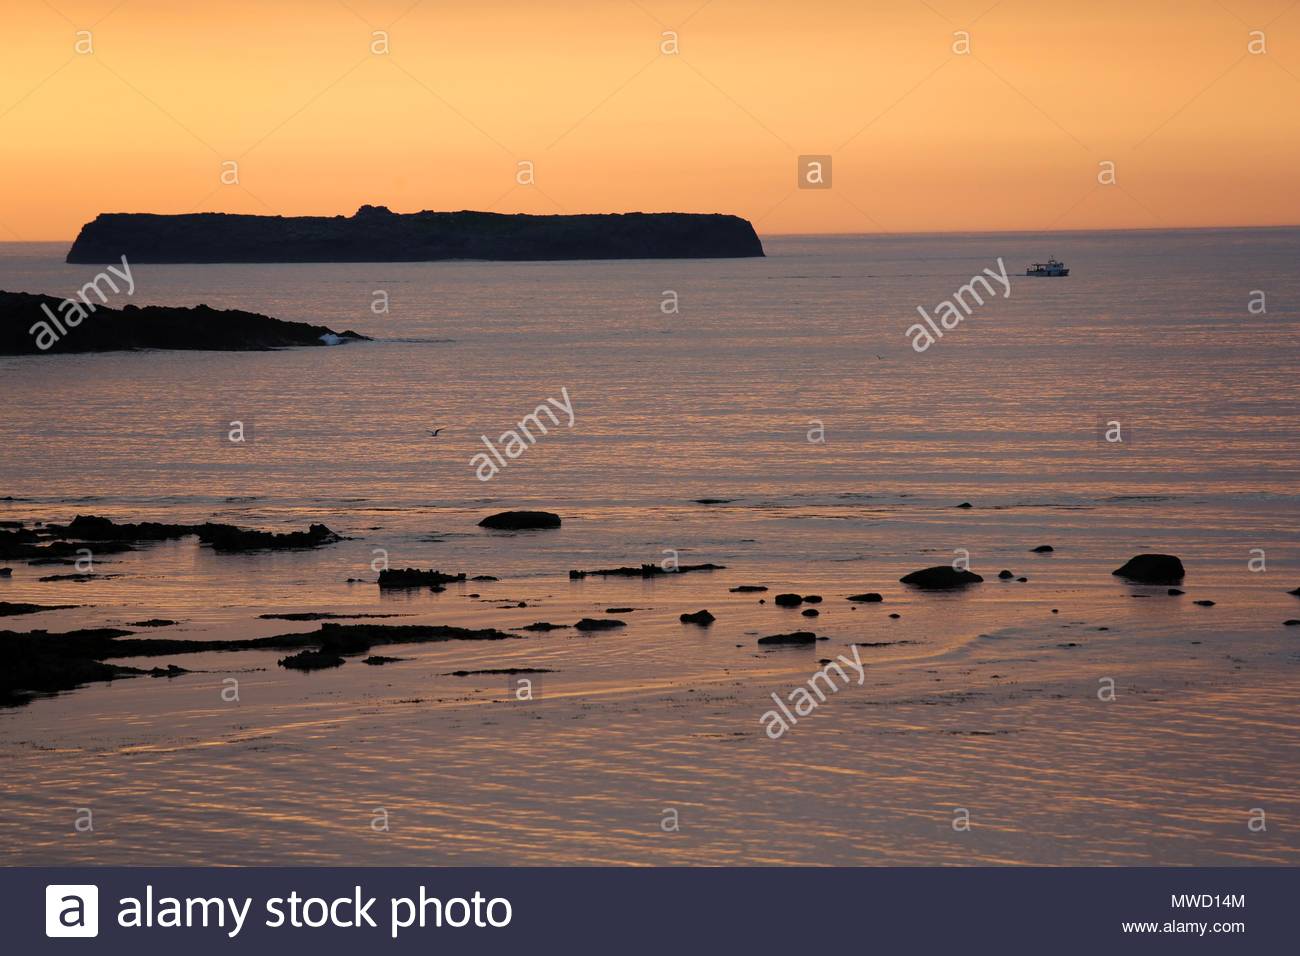 Sonnenuntergang fällt über die sieben Schweine von Inseln vor der Küste von Castlegregory in Irland als ein Schiff auf See Stockfoto